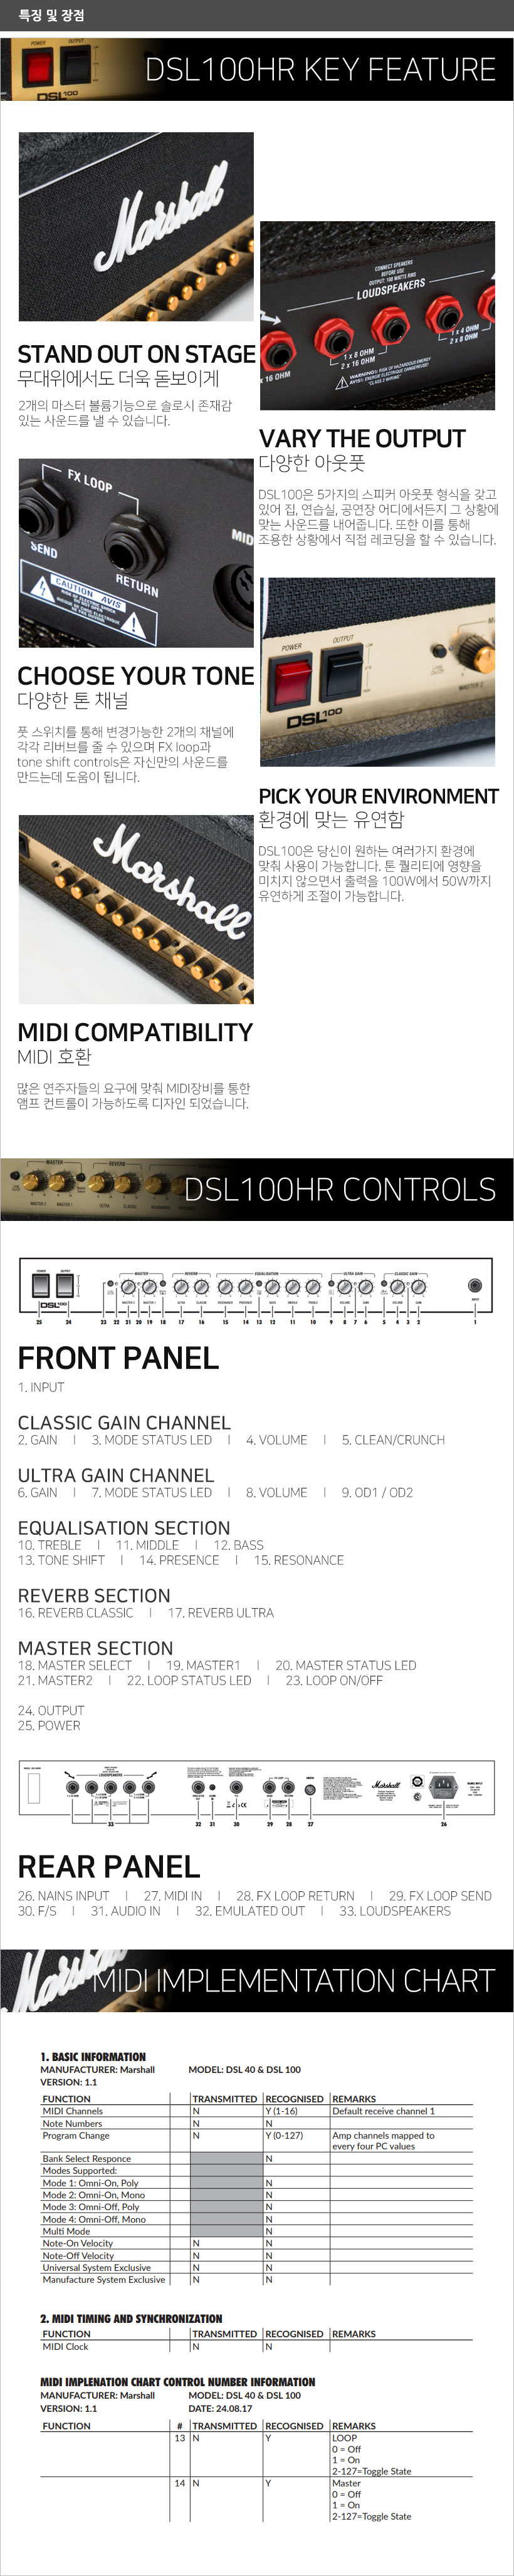 DSL100HR 특징 및 장점